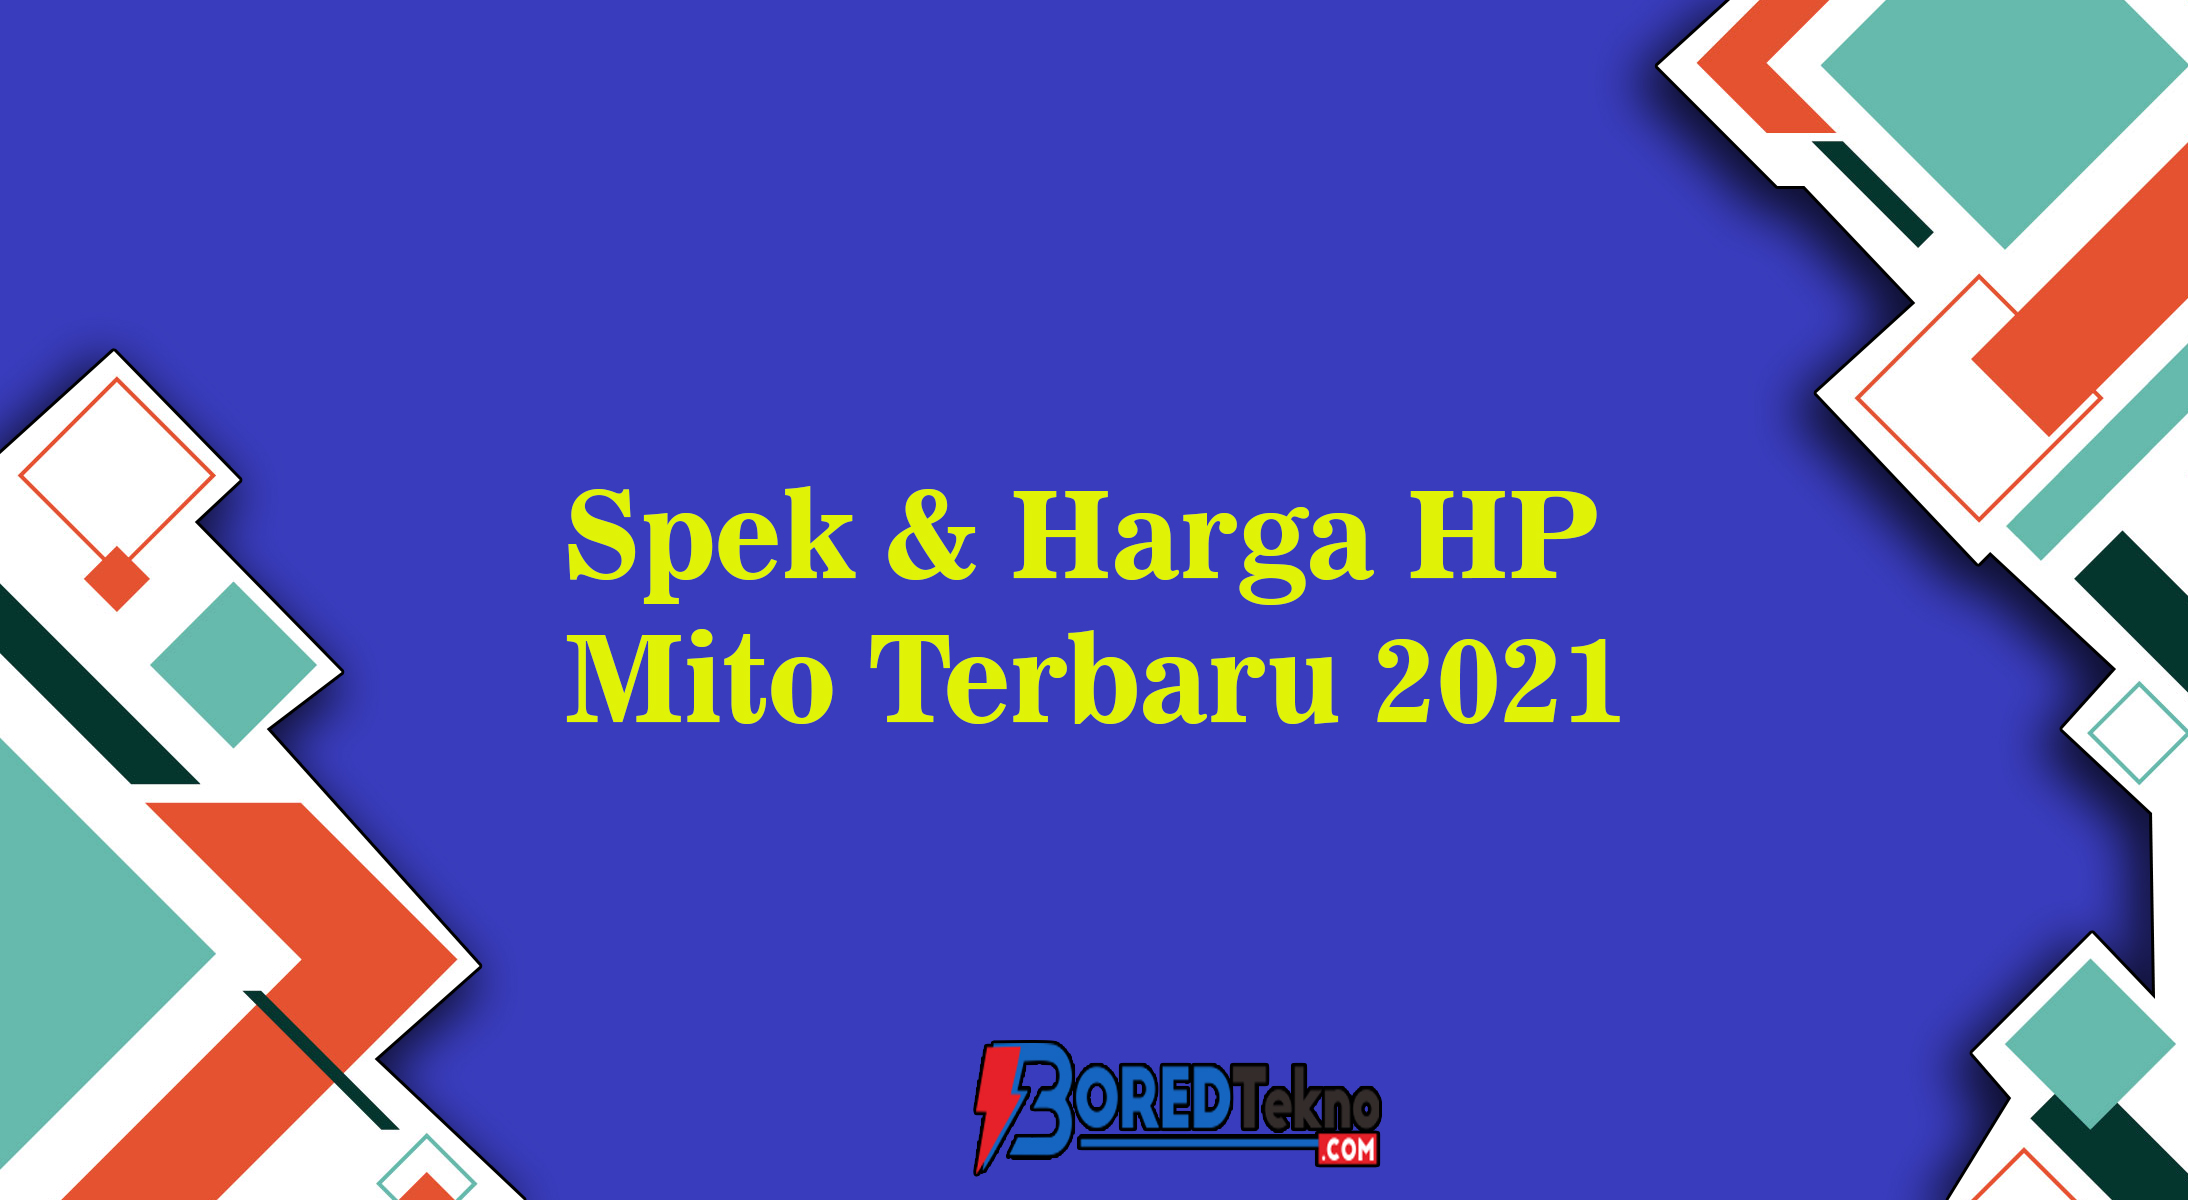 Spek & Harga HP Mito Terbaru 2021